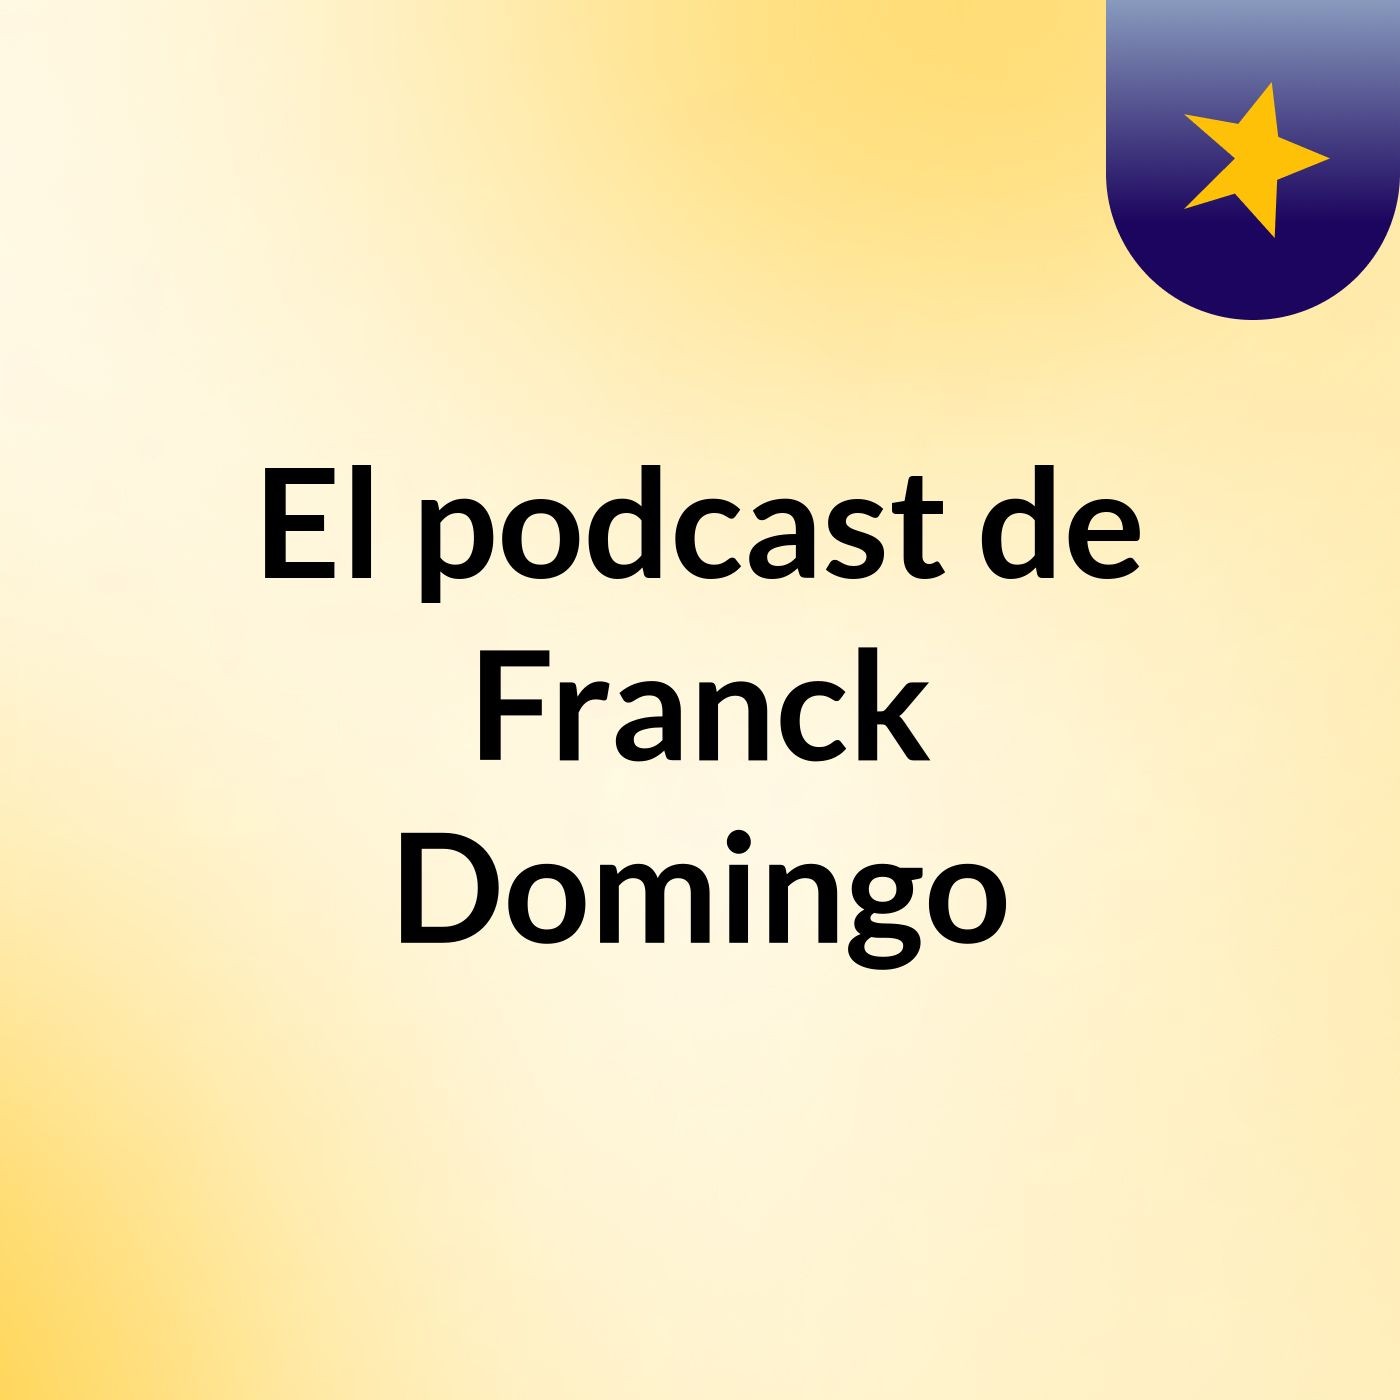 El podcast de Franck Domingo